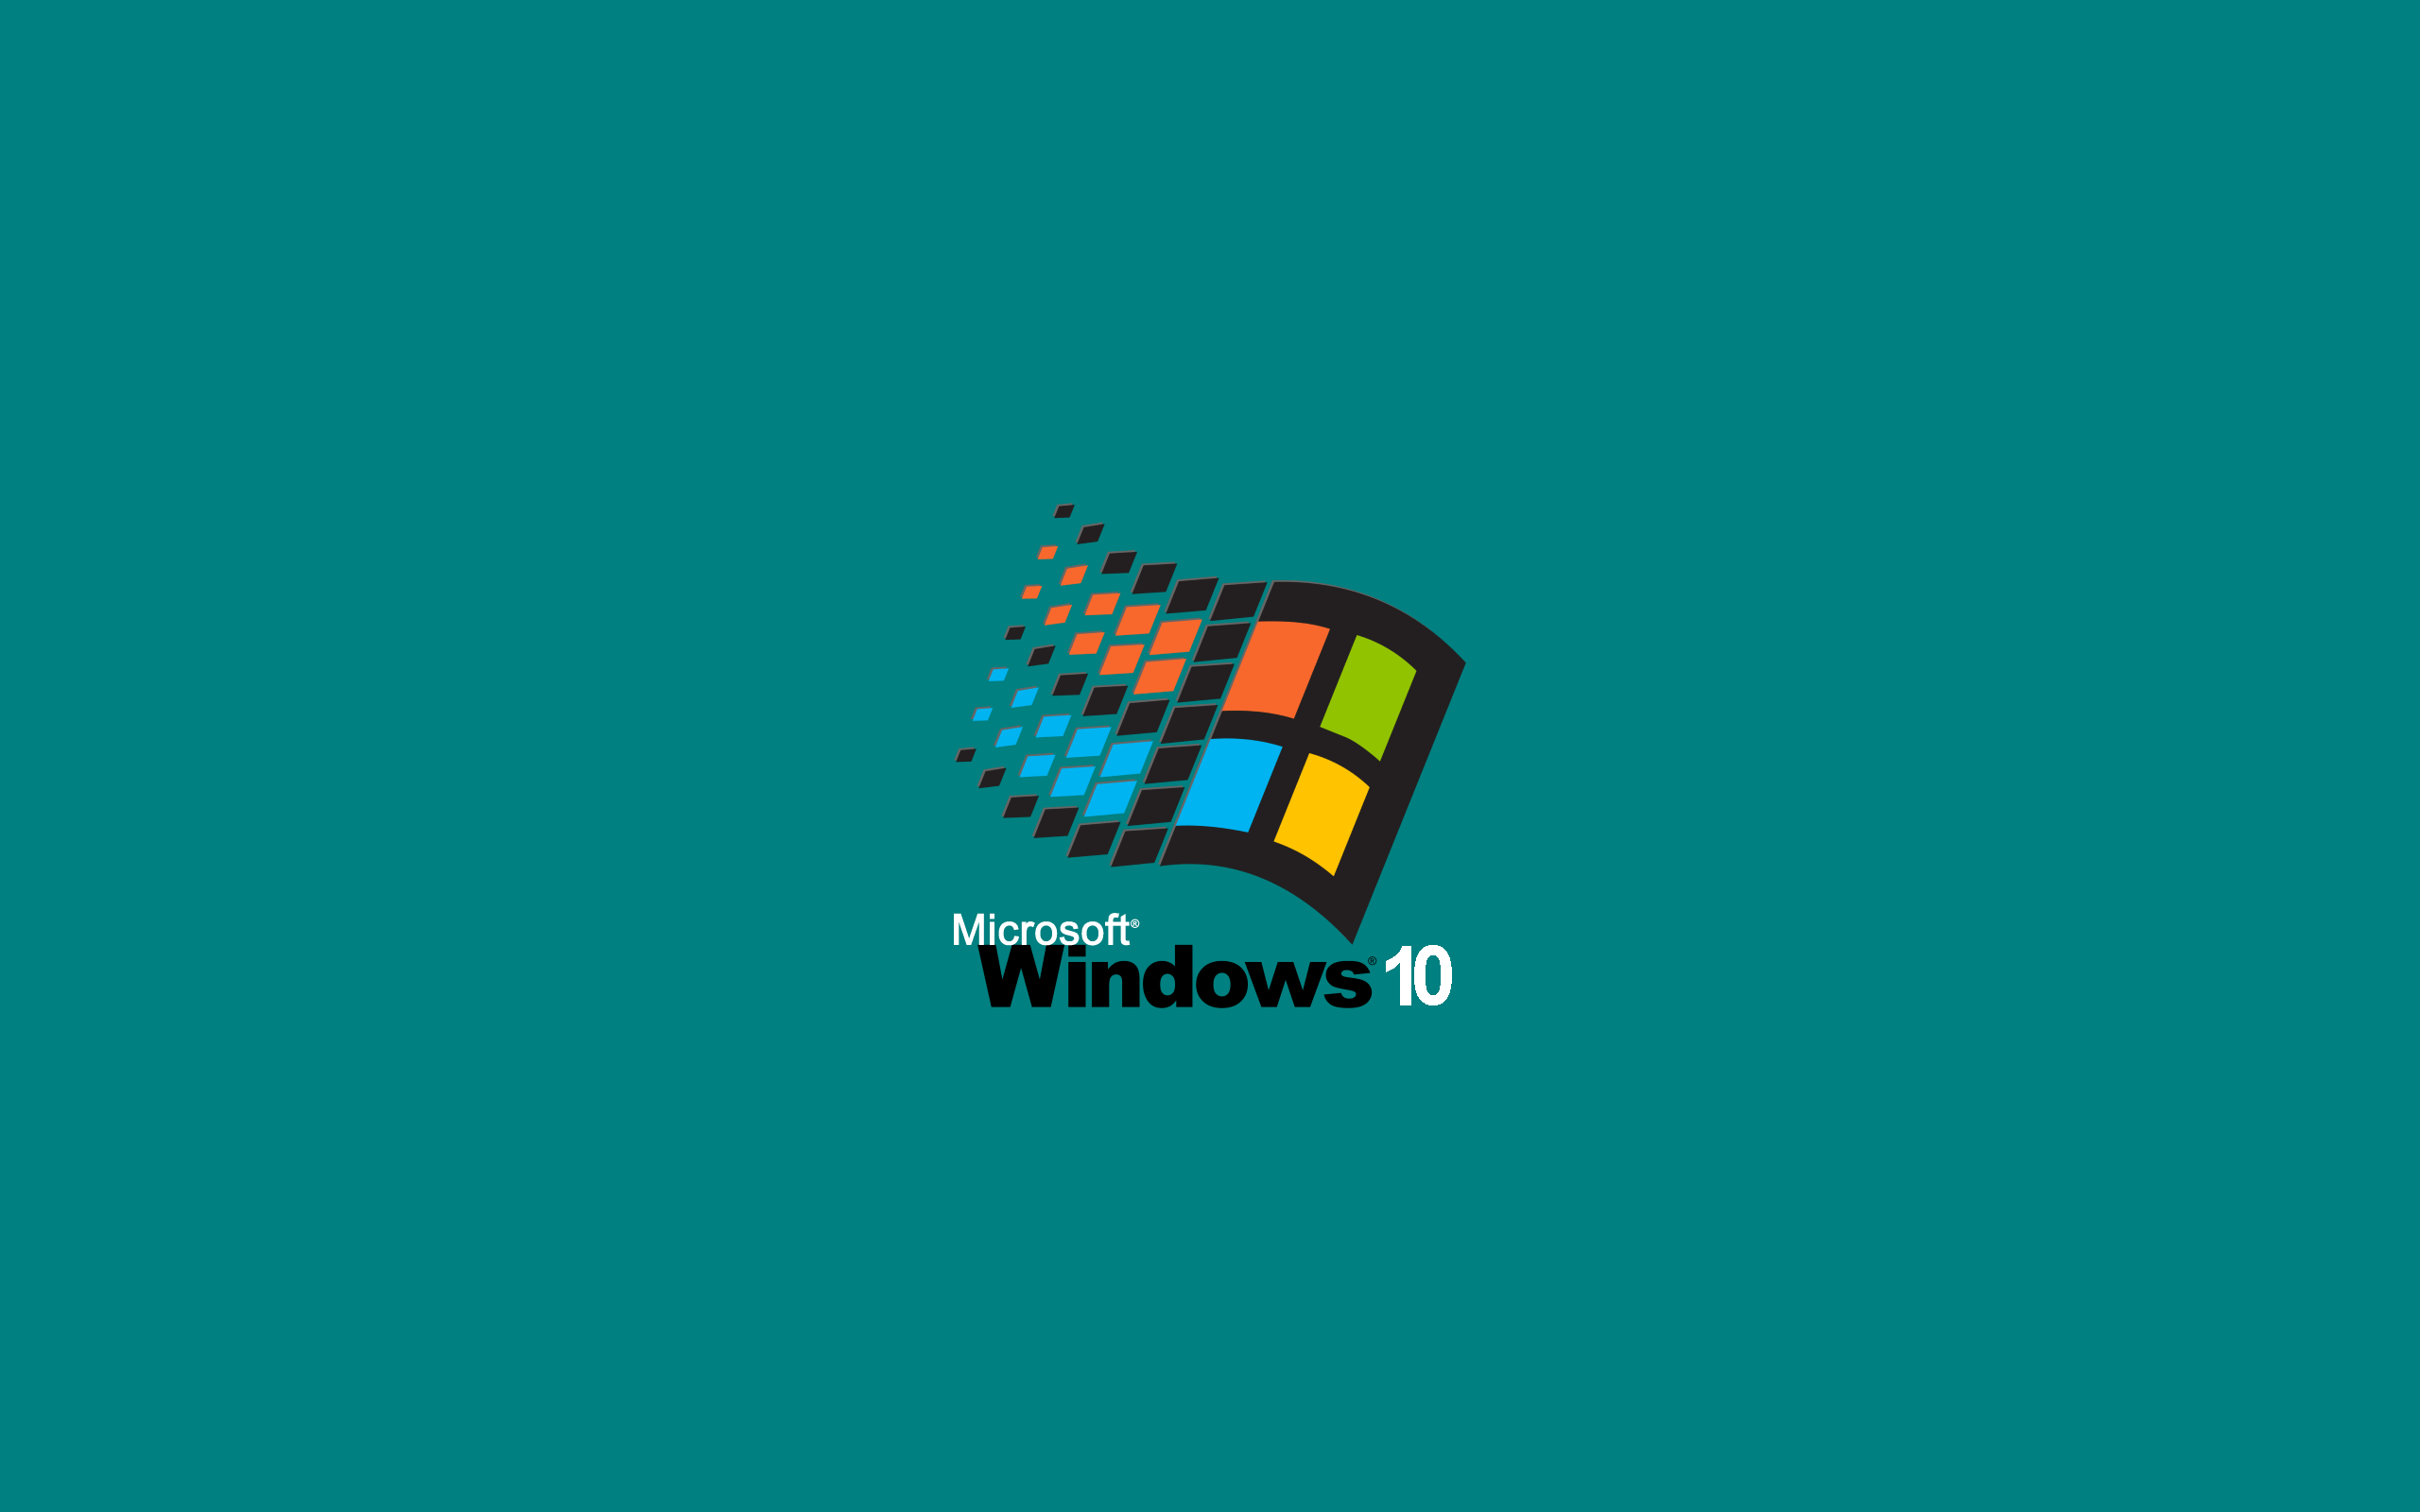 Về lại hình nền mặc định của Windows 10 nhanh chóng và dễ dàng với chỉ một vài thao tác đơn giản. Không còn phải loay hoay tìm kiếm, hãy tìm hiểu cách lấy lại hình nền mặc định chỉ trong tích tắc.